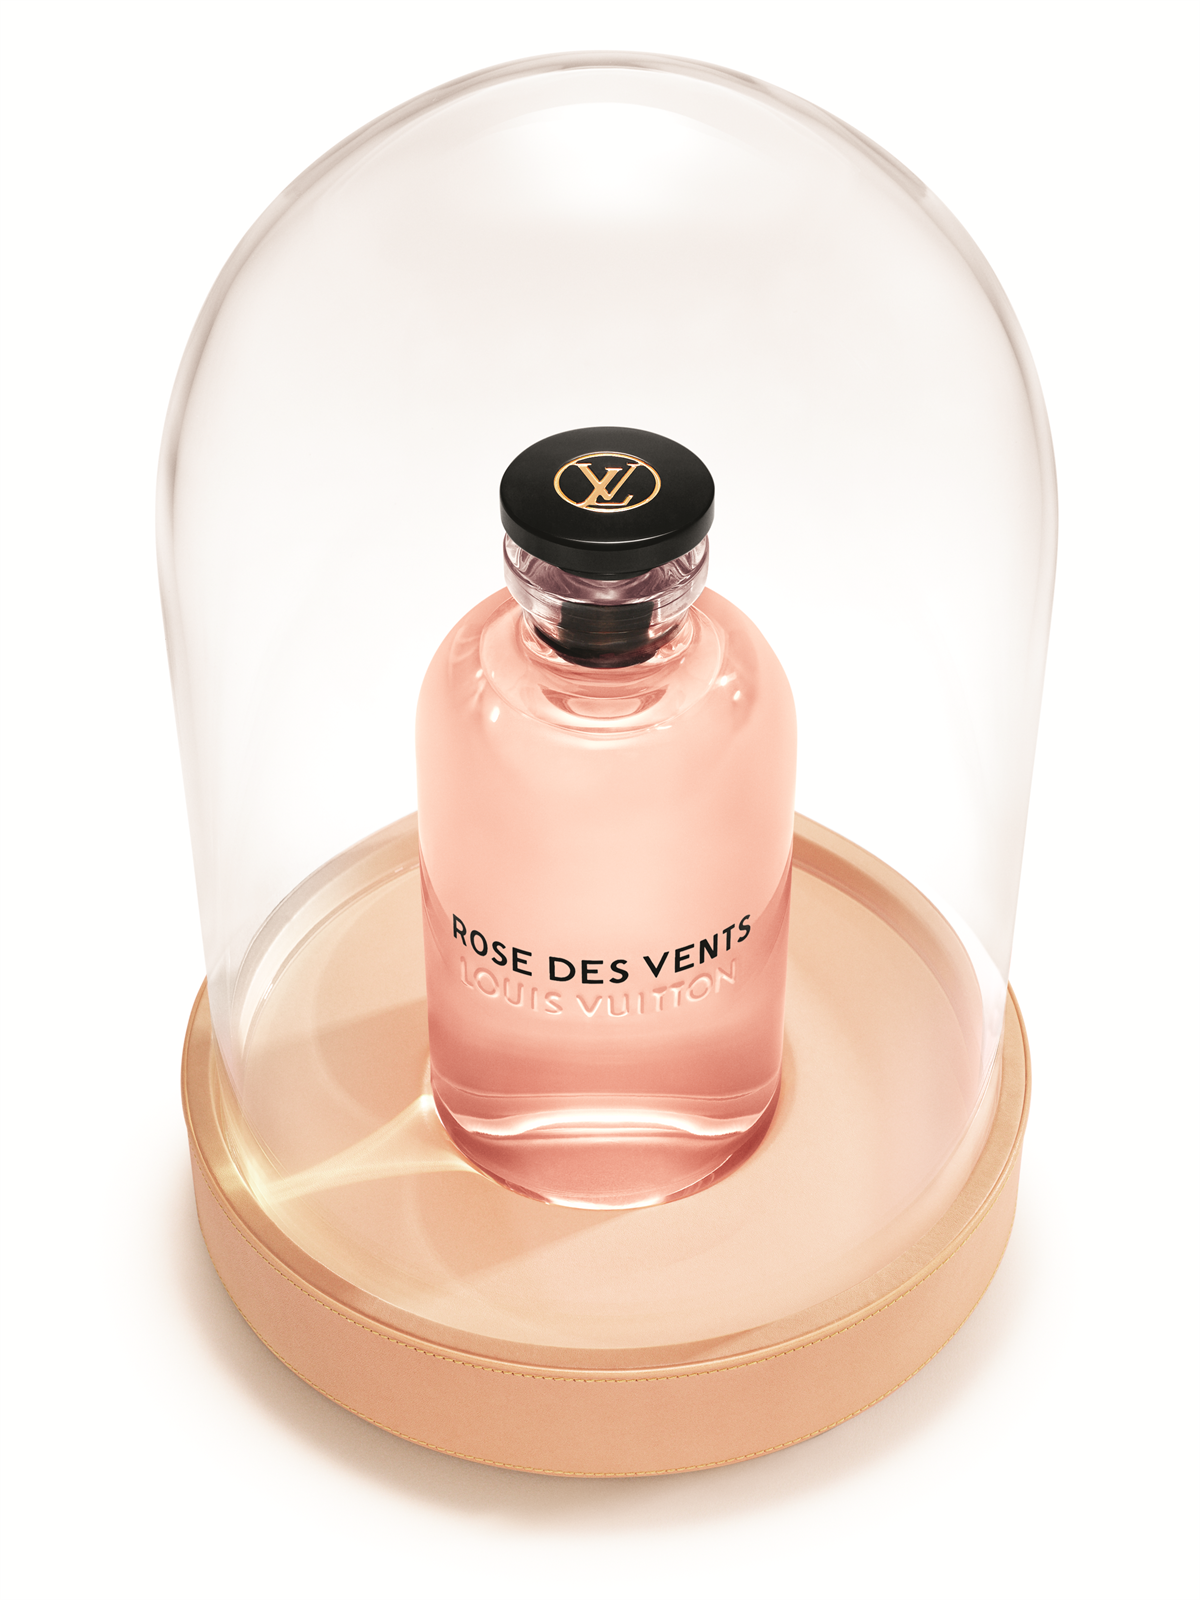 LOUIS VUITTON_The Ultimate Bottle_ROSE DES VENTS (2)